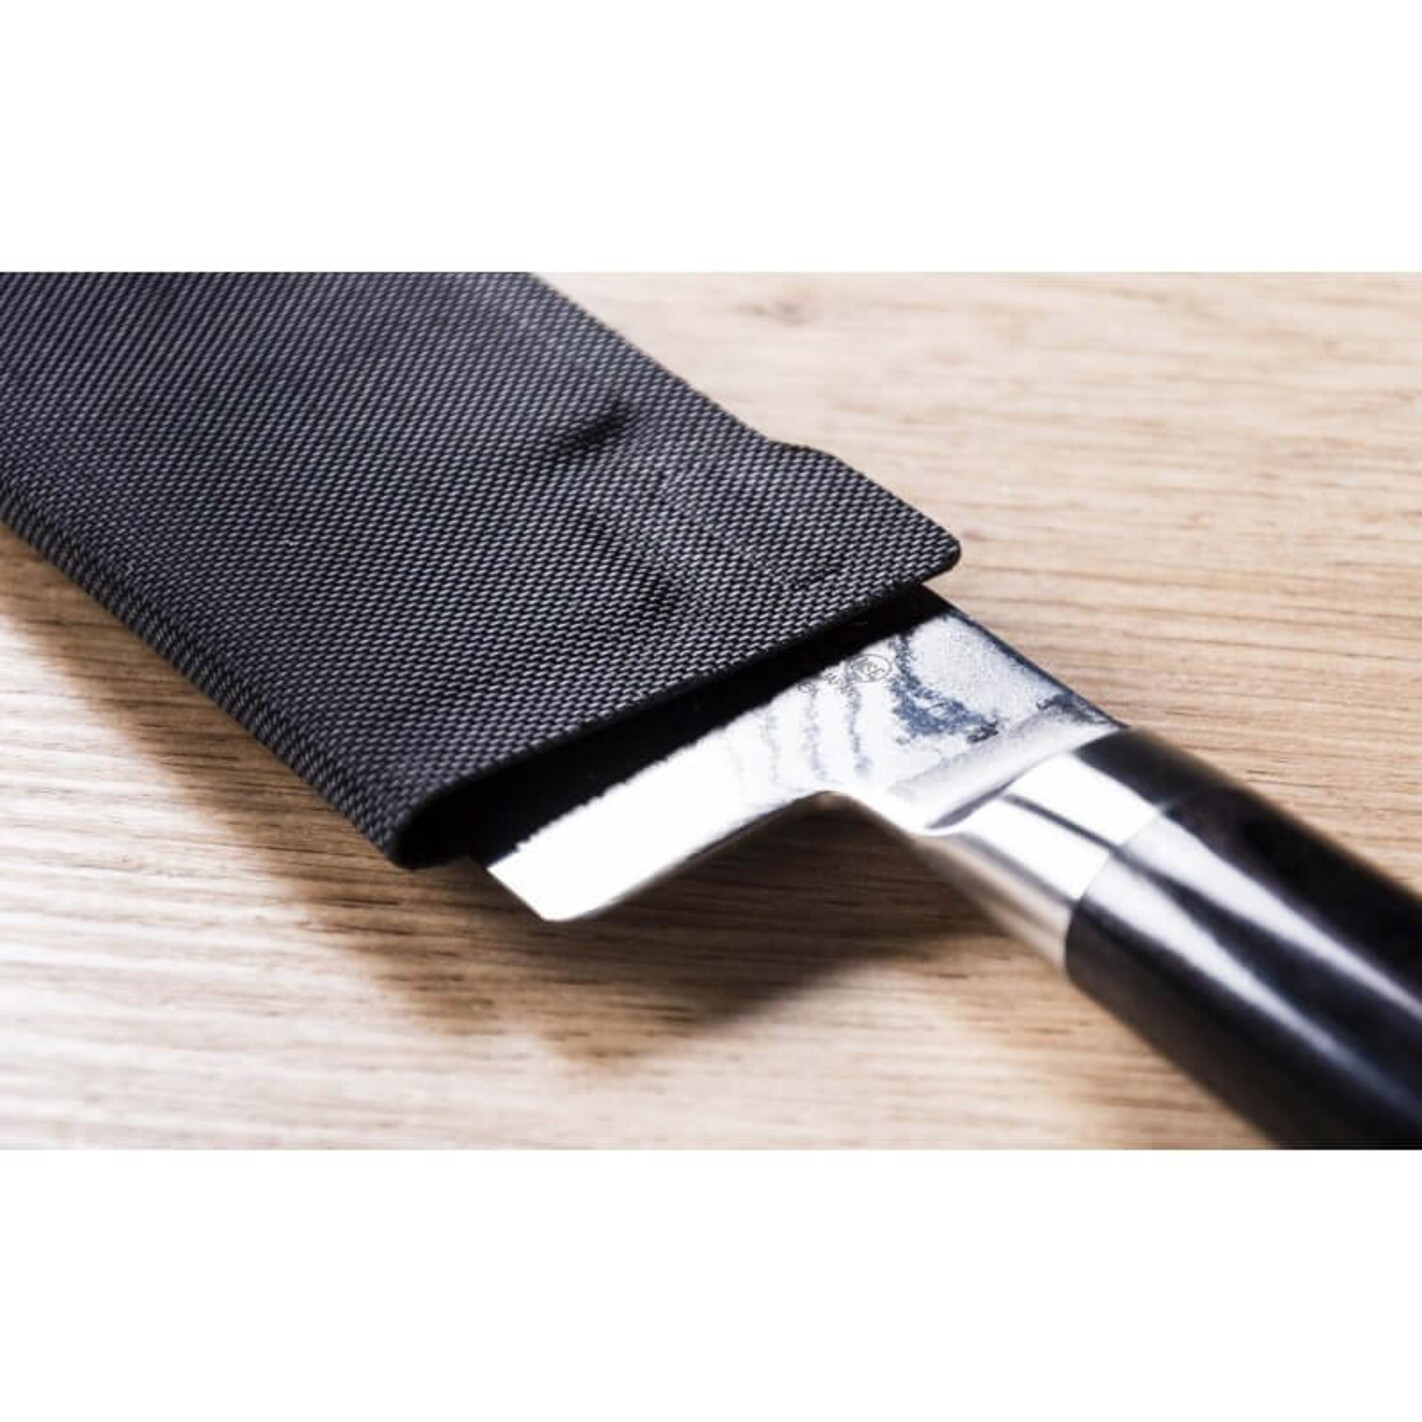 Protège-lame universel pour couteaux - Rigide - 13,5 x 3cm - Feutrine  intérieure